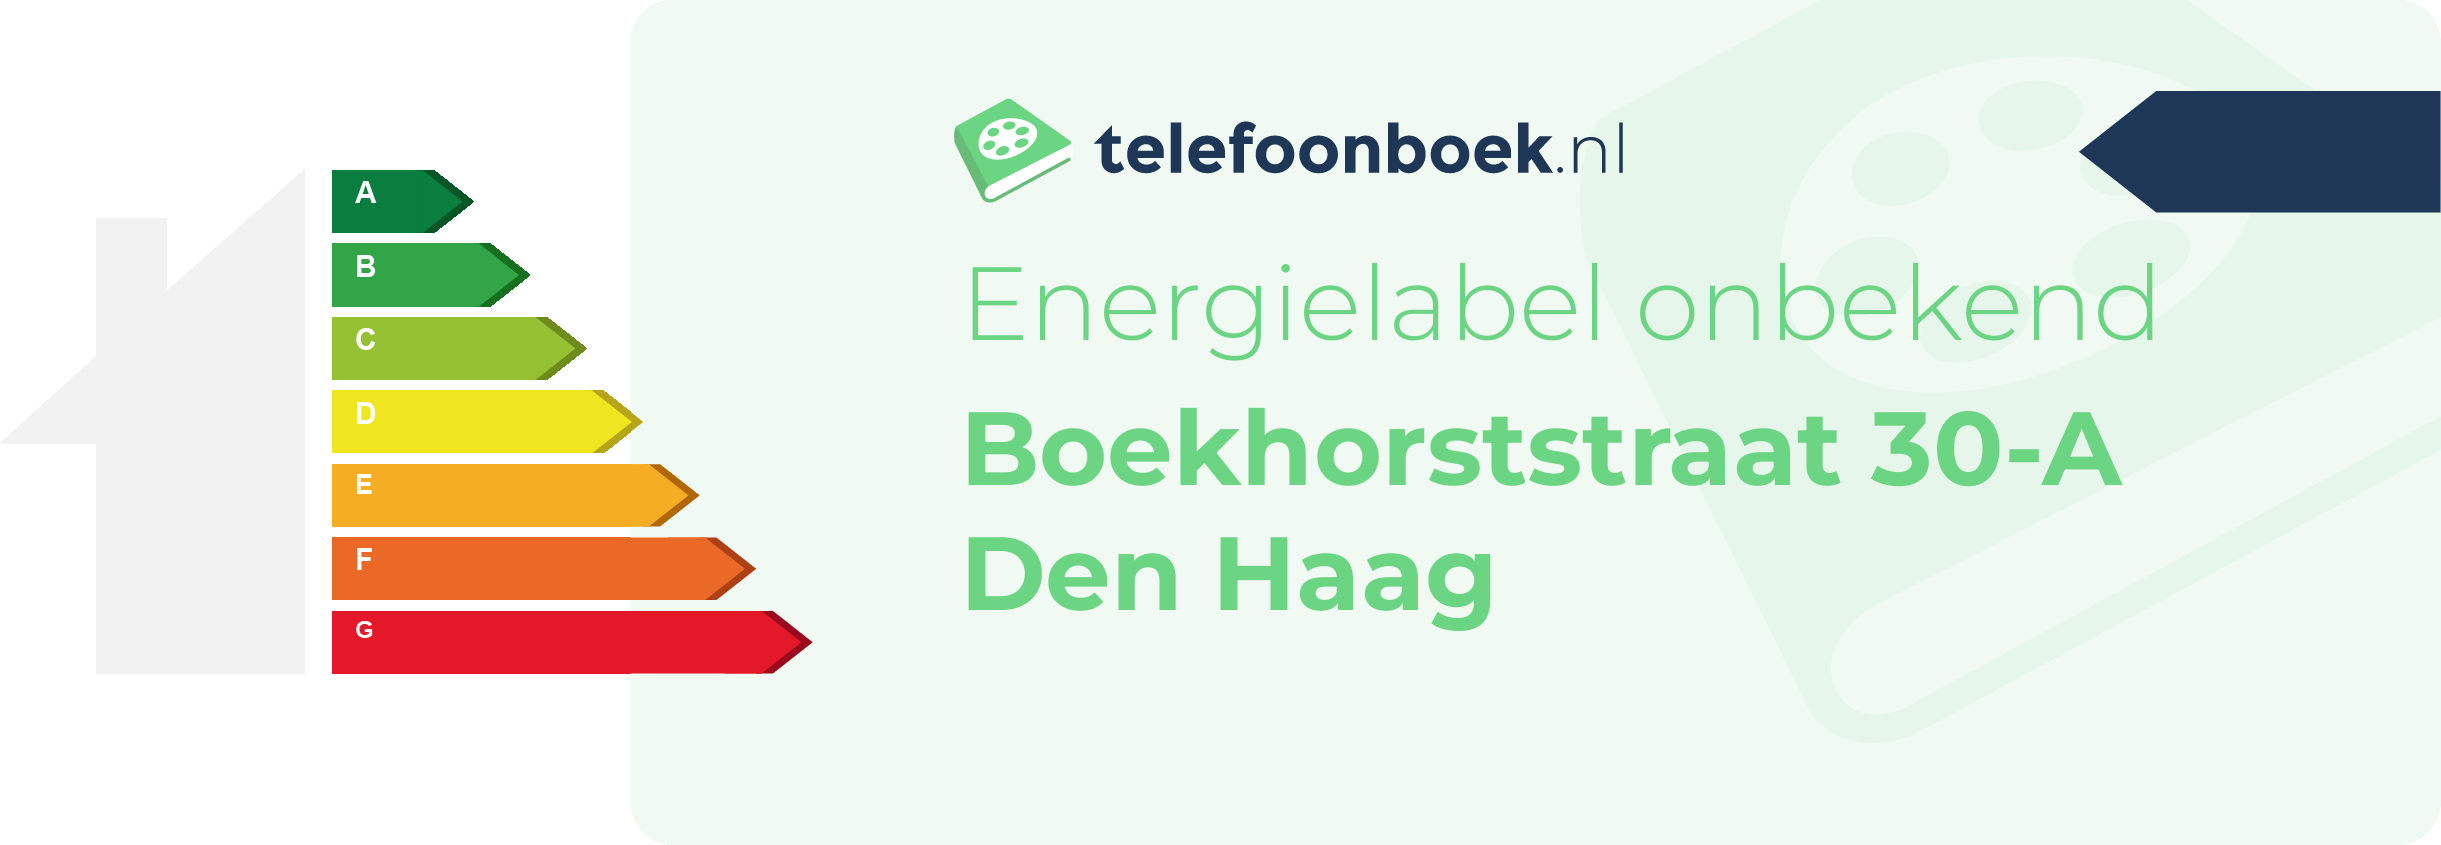 Energielabel Boekhorststraat 30-A Den Haag